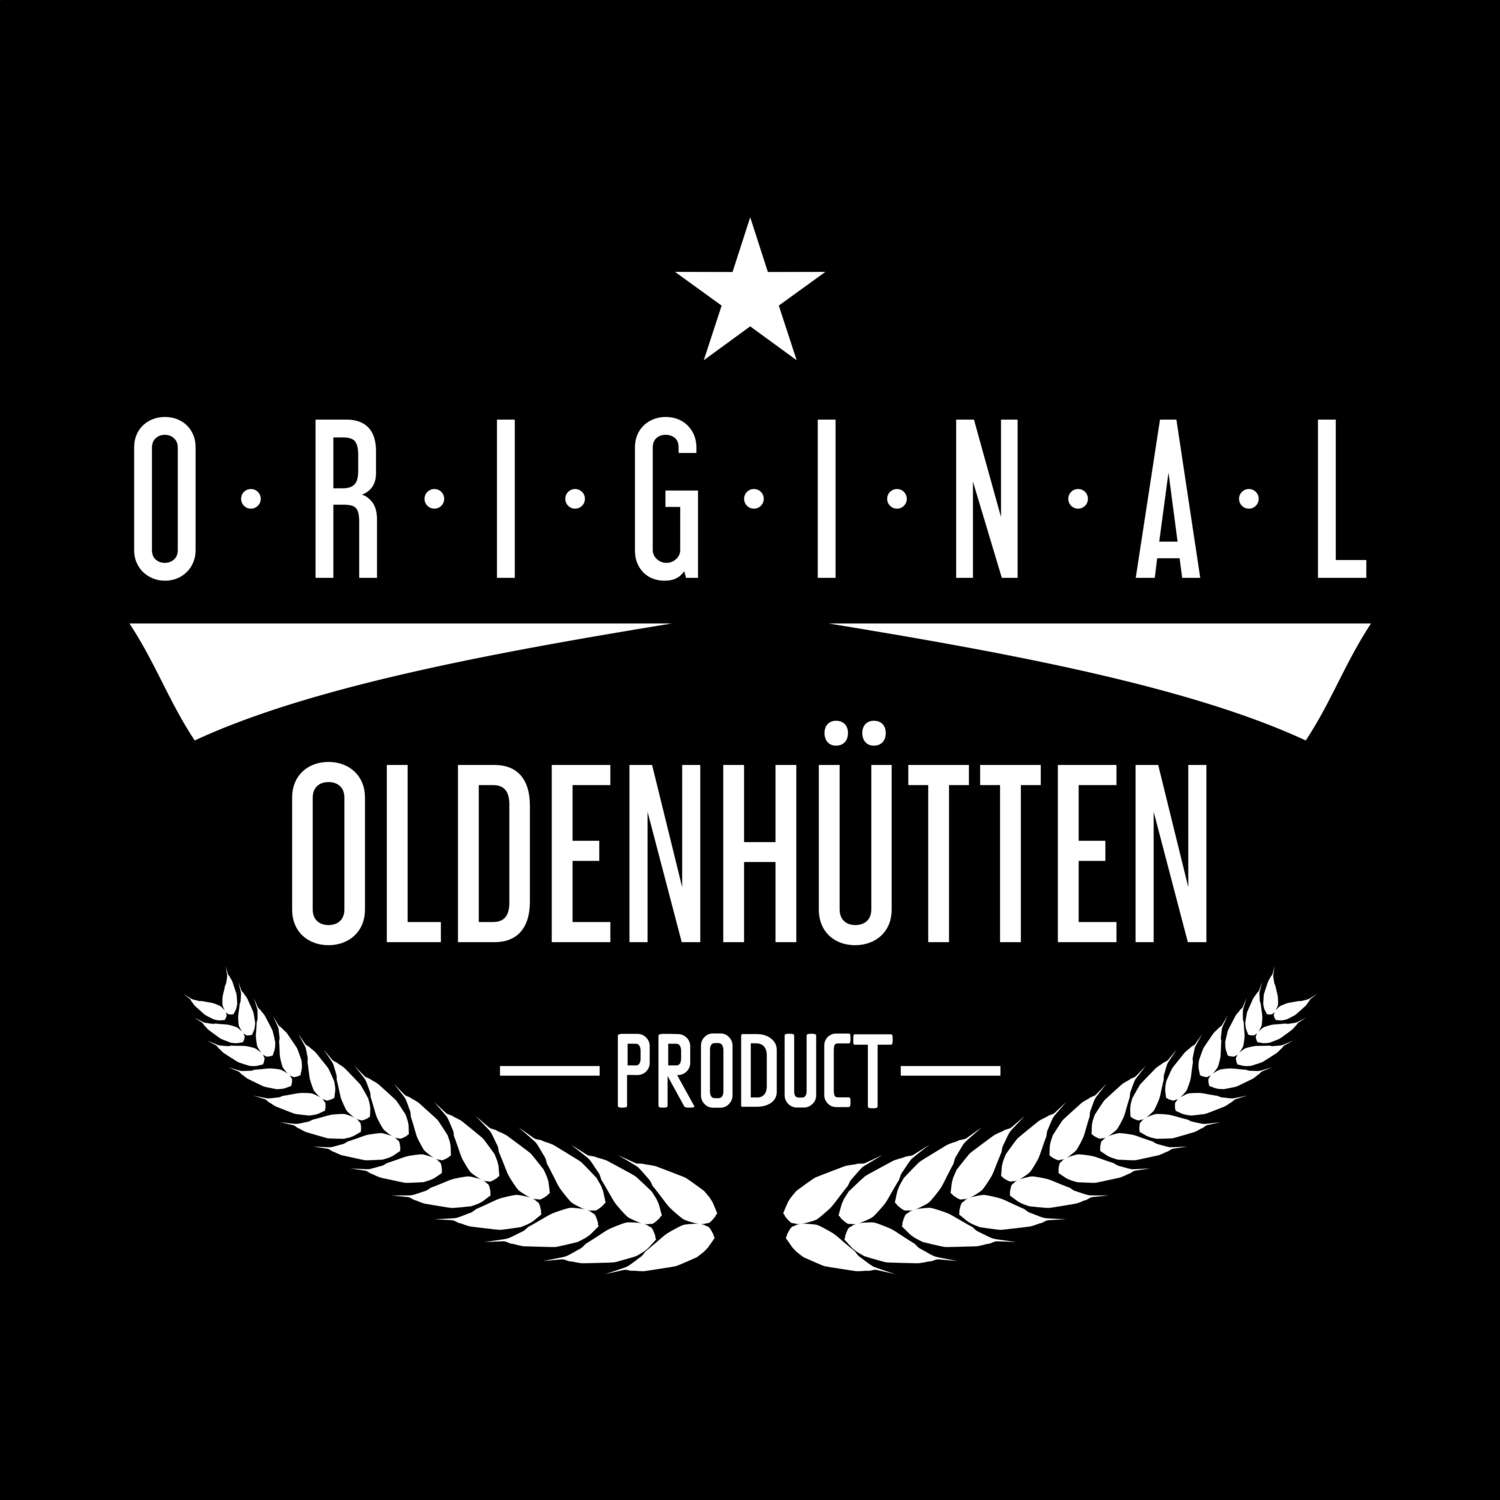 Oldenhütten T-Shirt »Original Product«